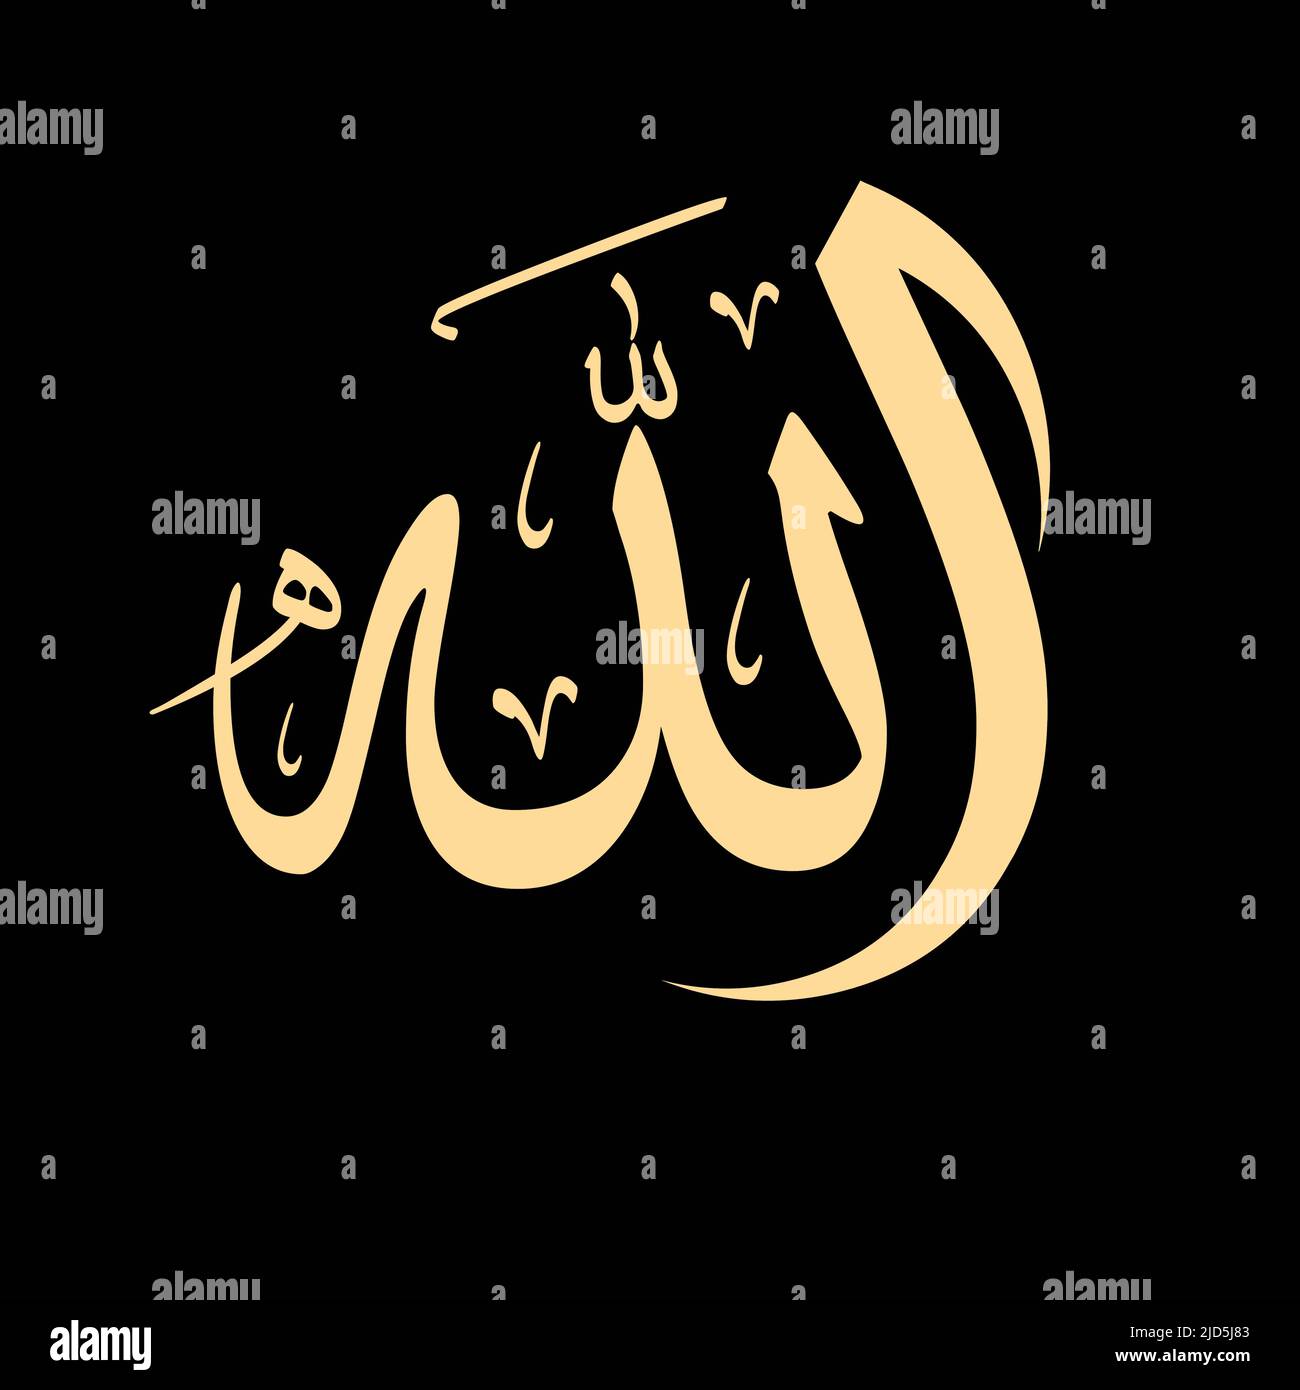 Allah hu akbar hi-res stock photography and images - Alamy